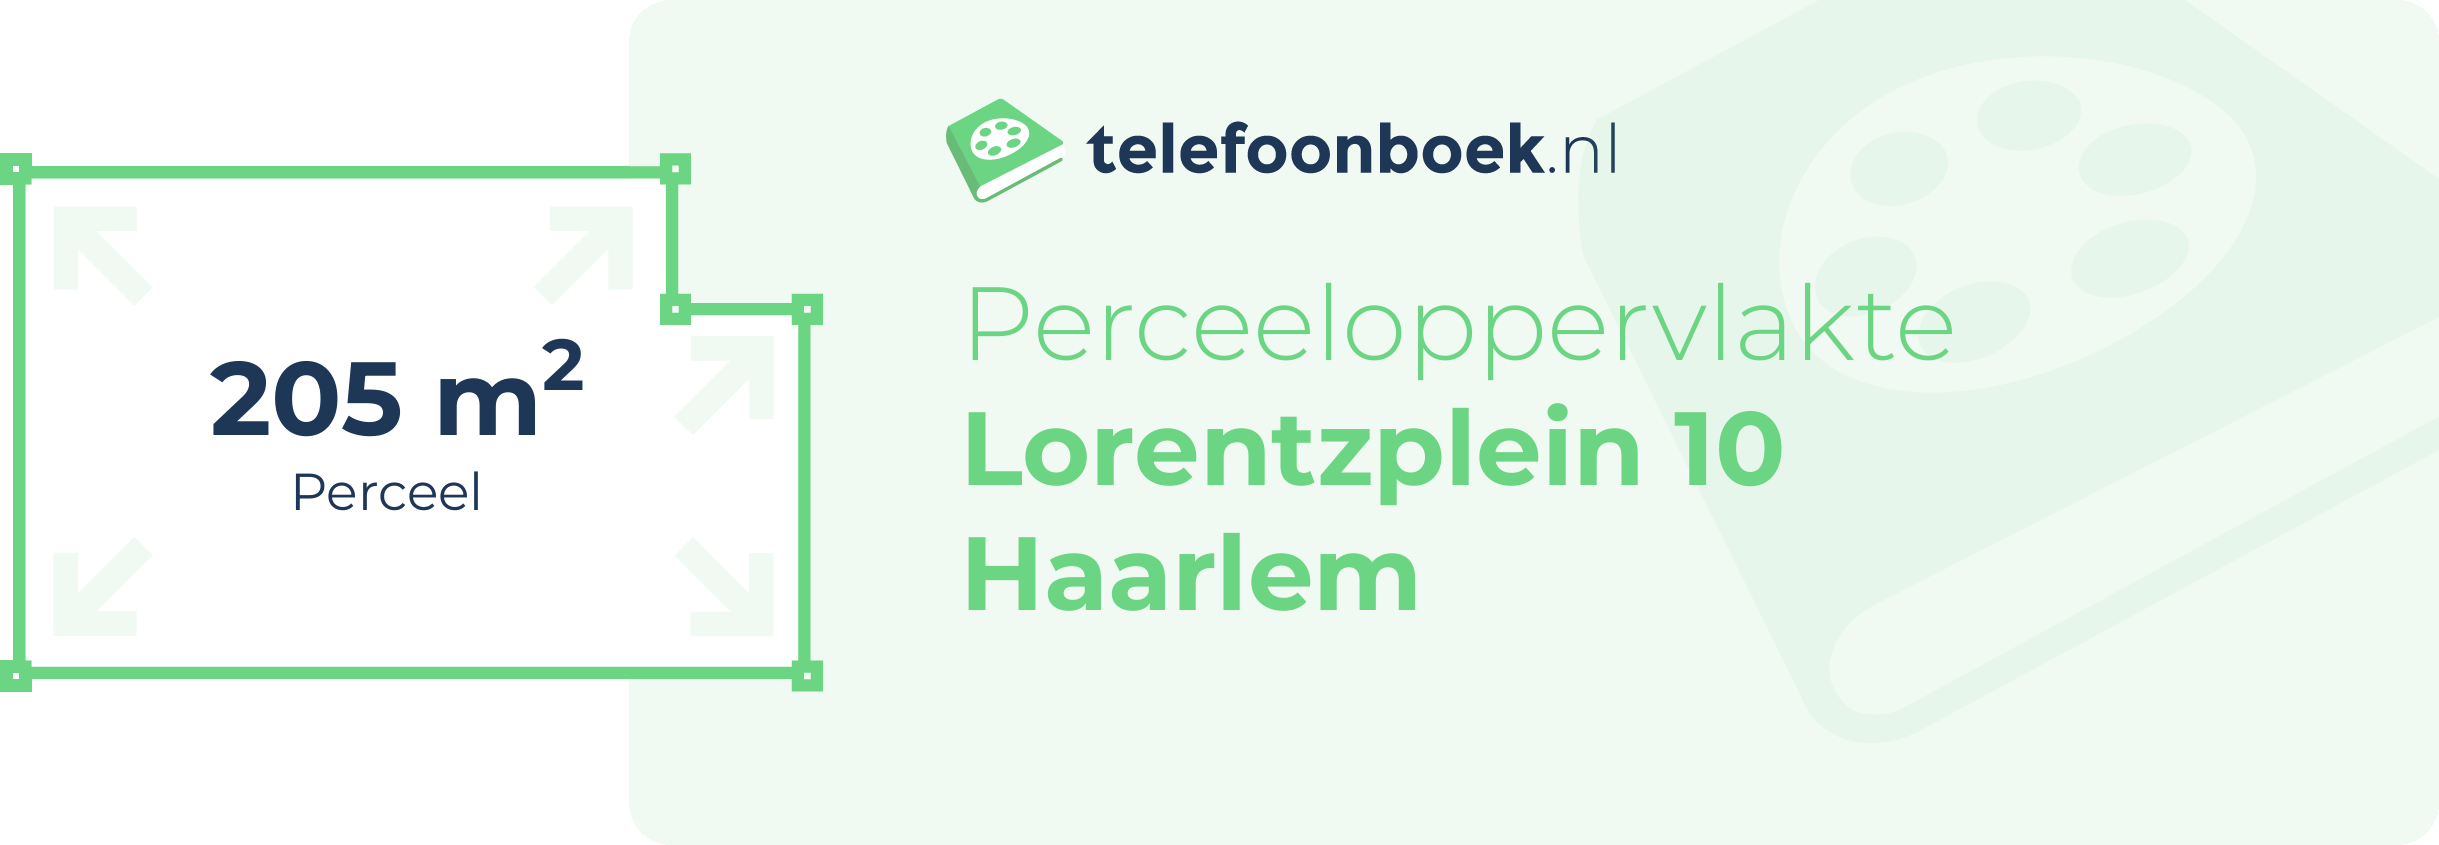 Perceeloppervlakte Lorentzplein 10 Haarlem